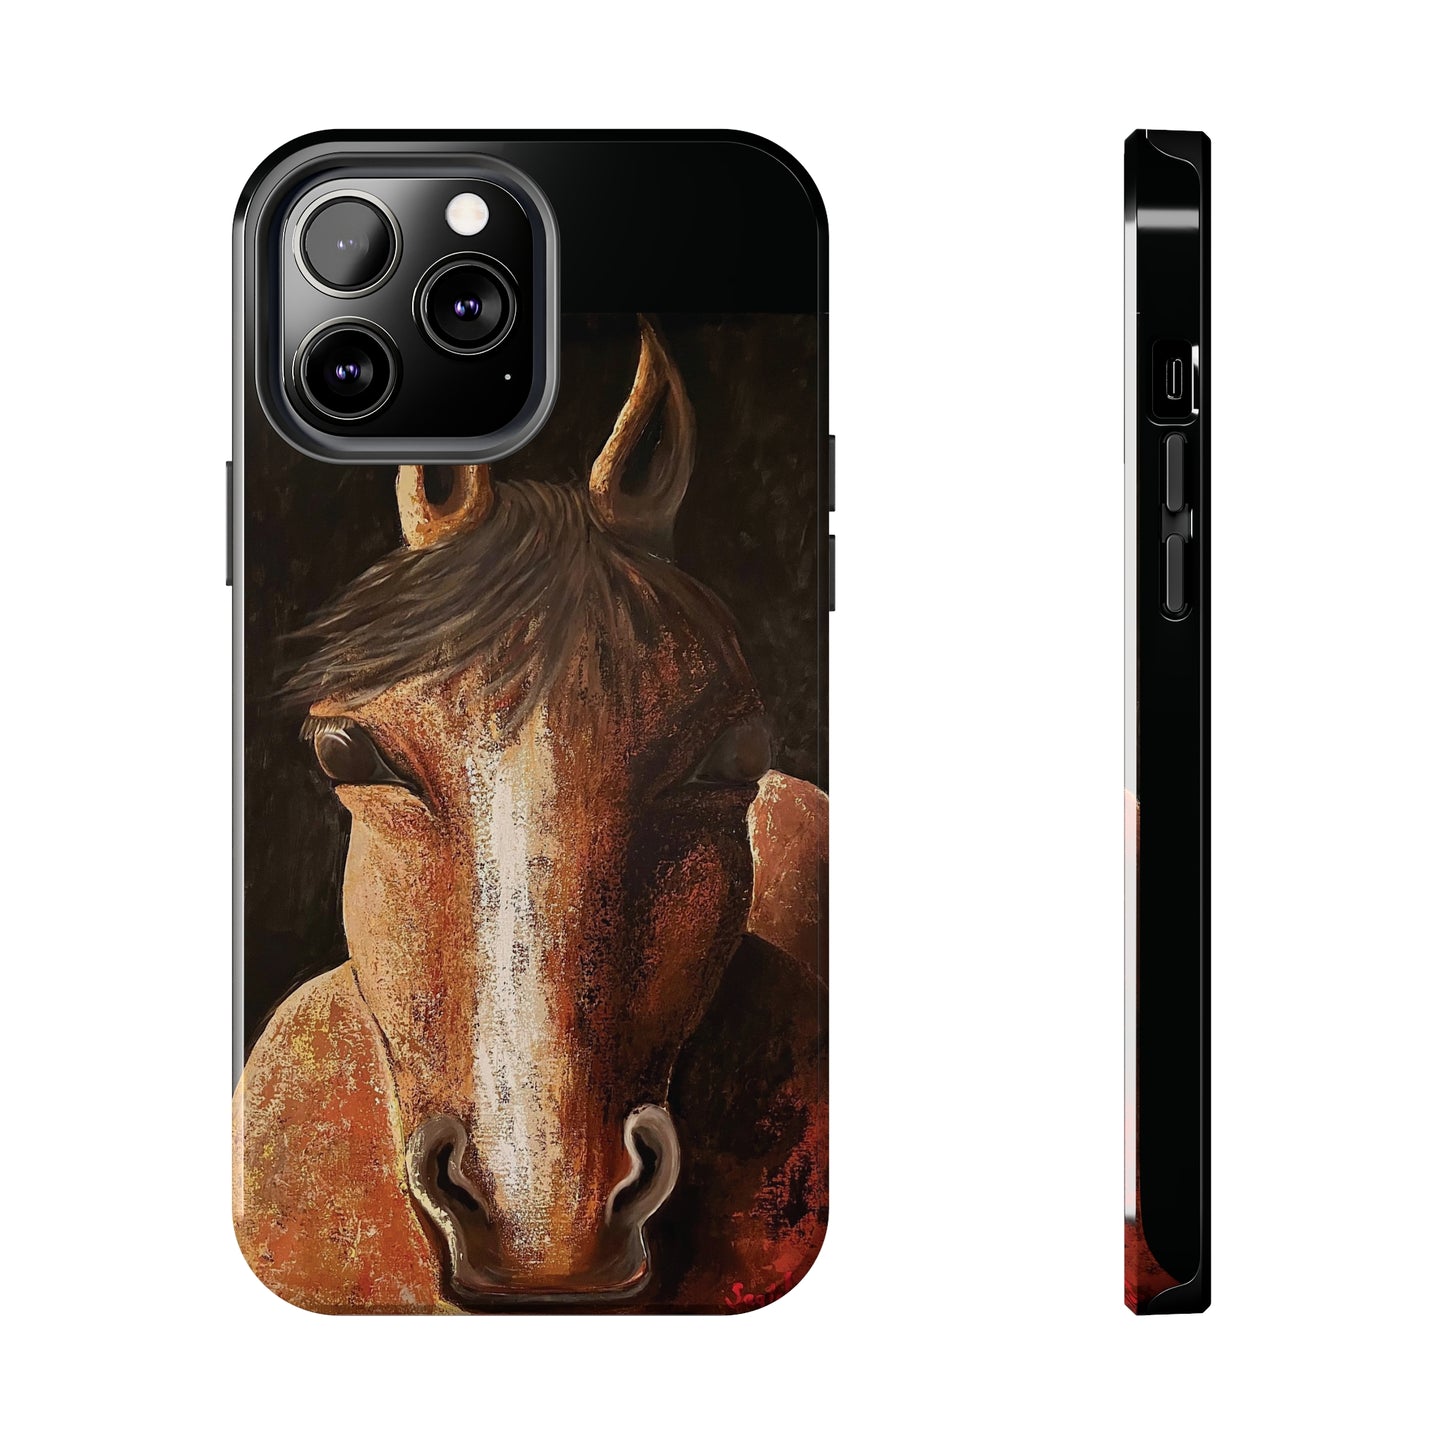 Tough Phone Case - Original art phone case - Equestrian Art phone case - Nigel